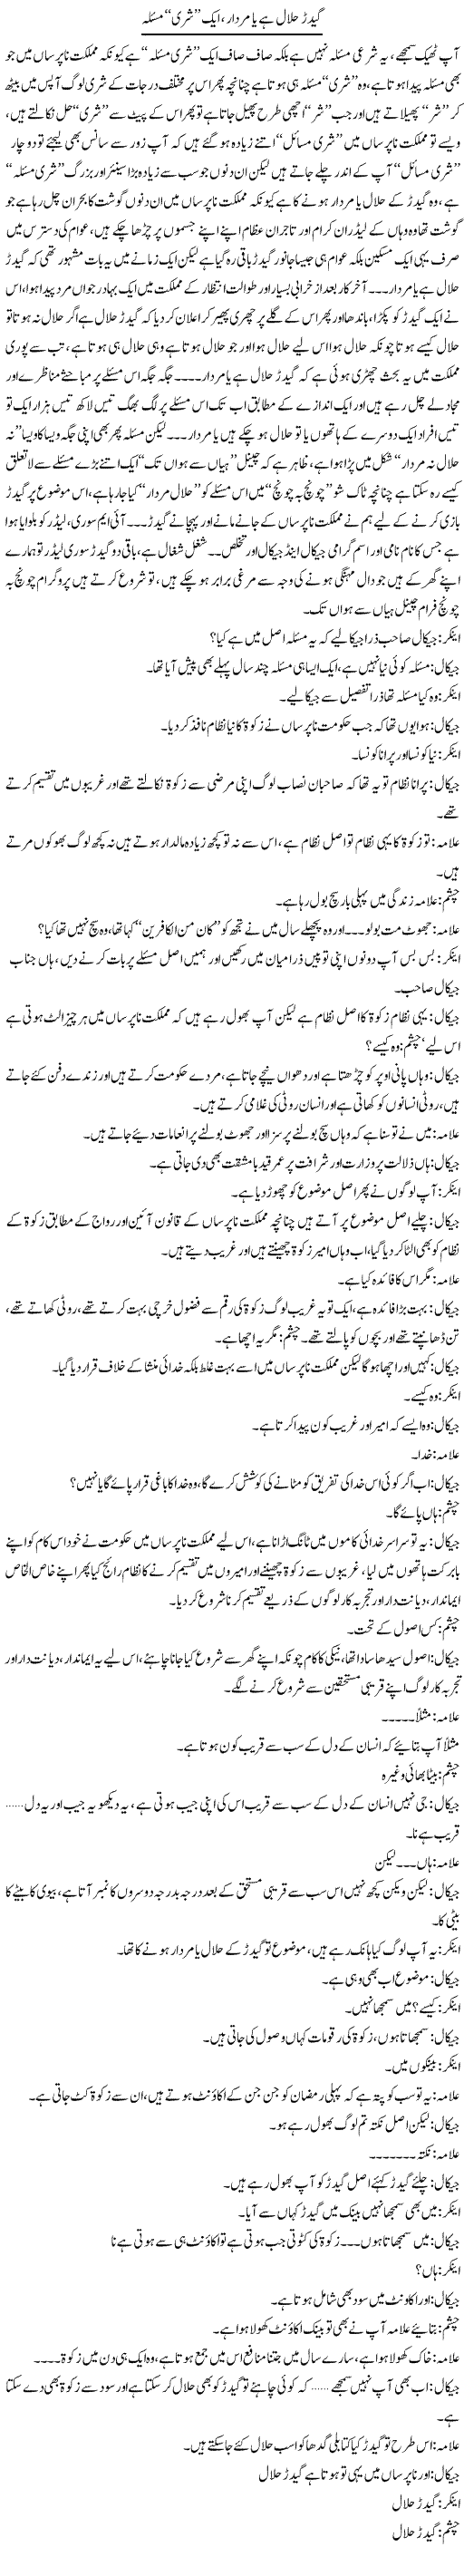 Geedar Halal Hai Ya Murdaar, Aik Shari Masla | Saad Ullah Jan Barq | Daily Urdu Columns